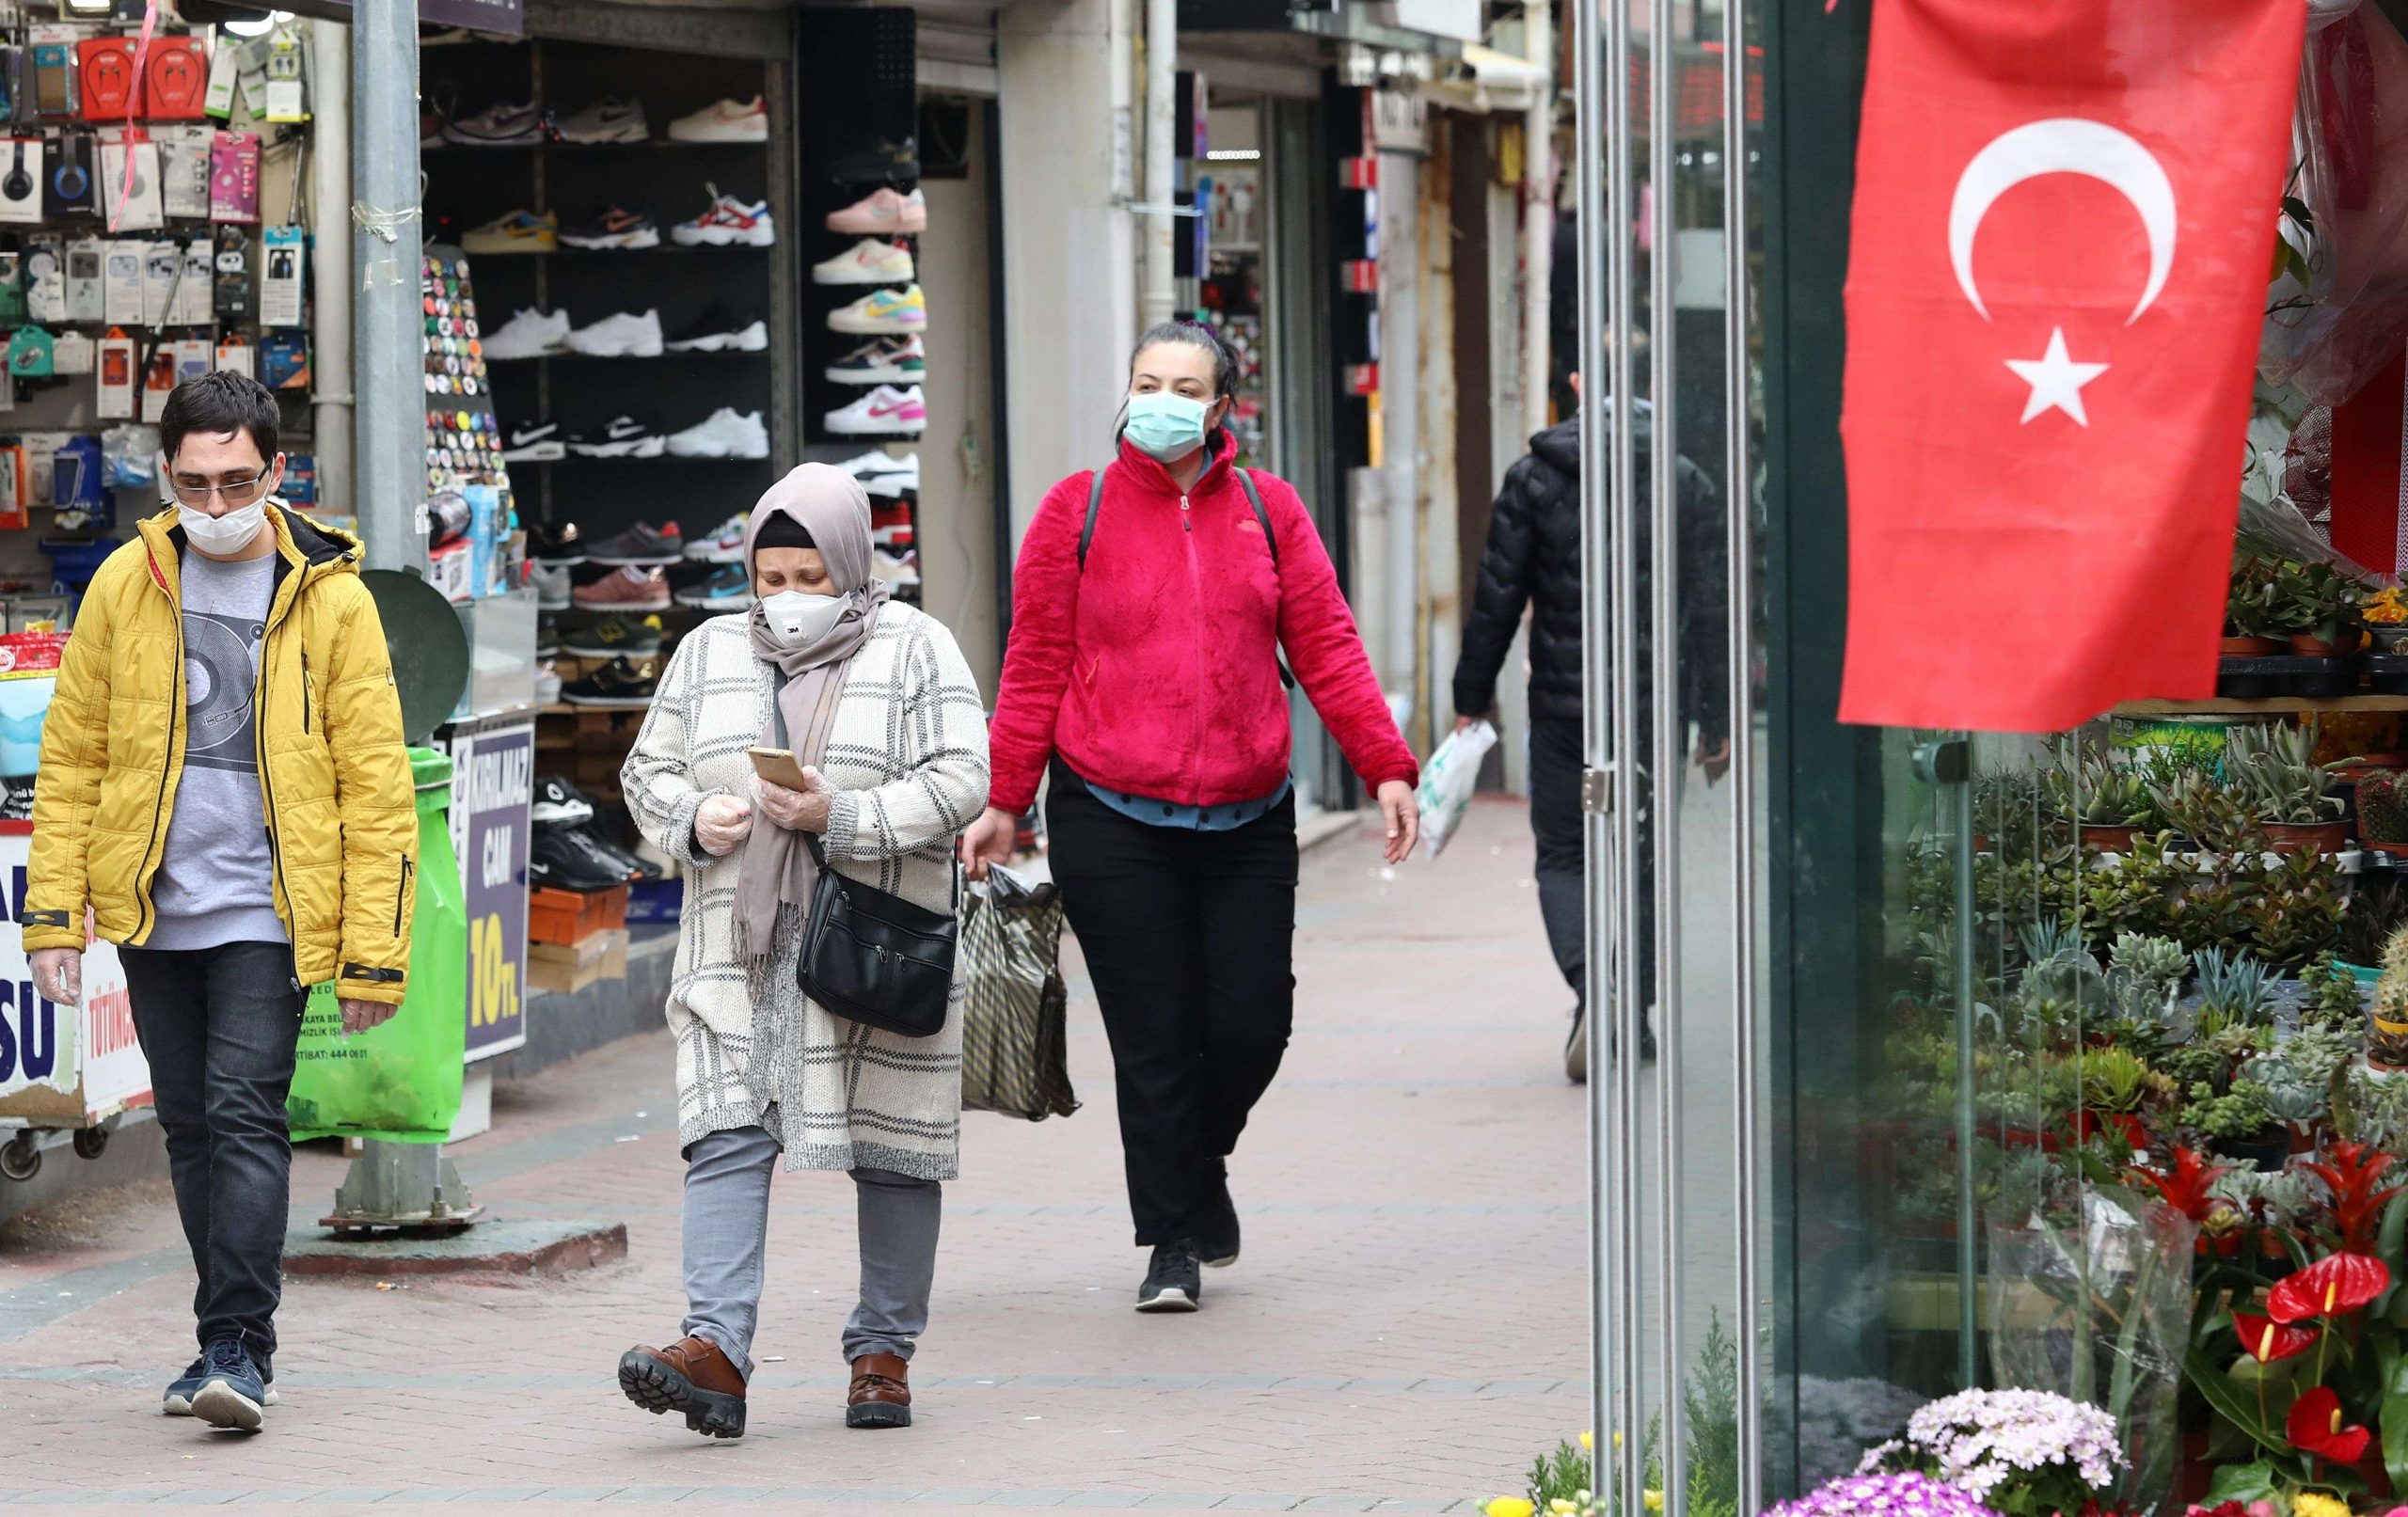   تركيا تسجل 32 ألف إصابة جديدة بفيروس كورونا